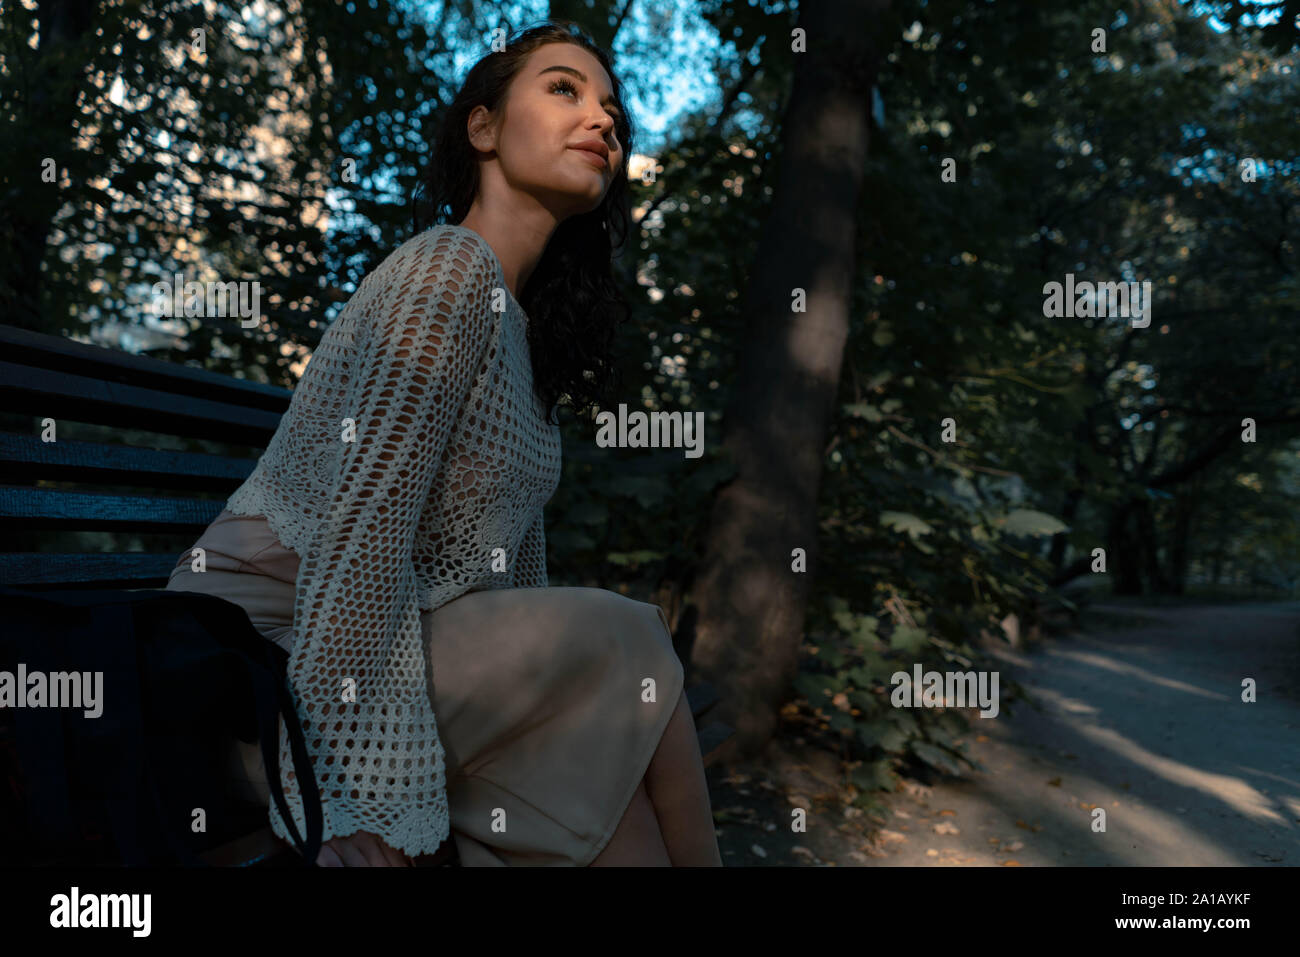 Frau in romantischen Kleidung und Strohhut im Freien im Herbst Park und genießen Sie gutes Wetter und Sonnenuntergang, beim Sitzen auf der Bank unter gotischen Bogen Stockfoto